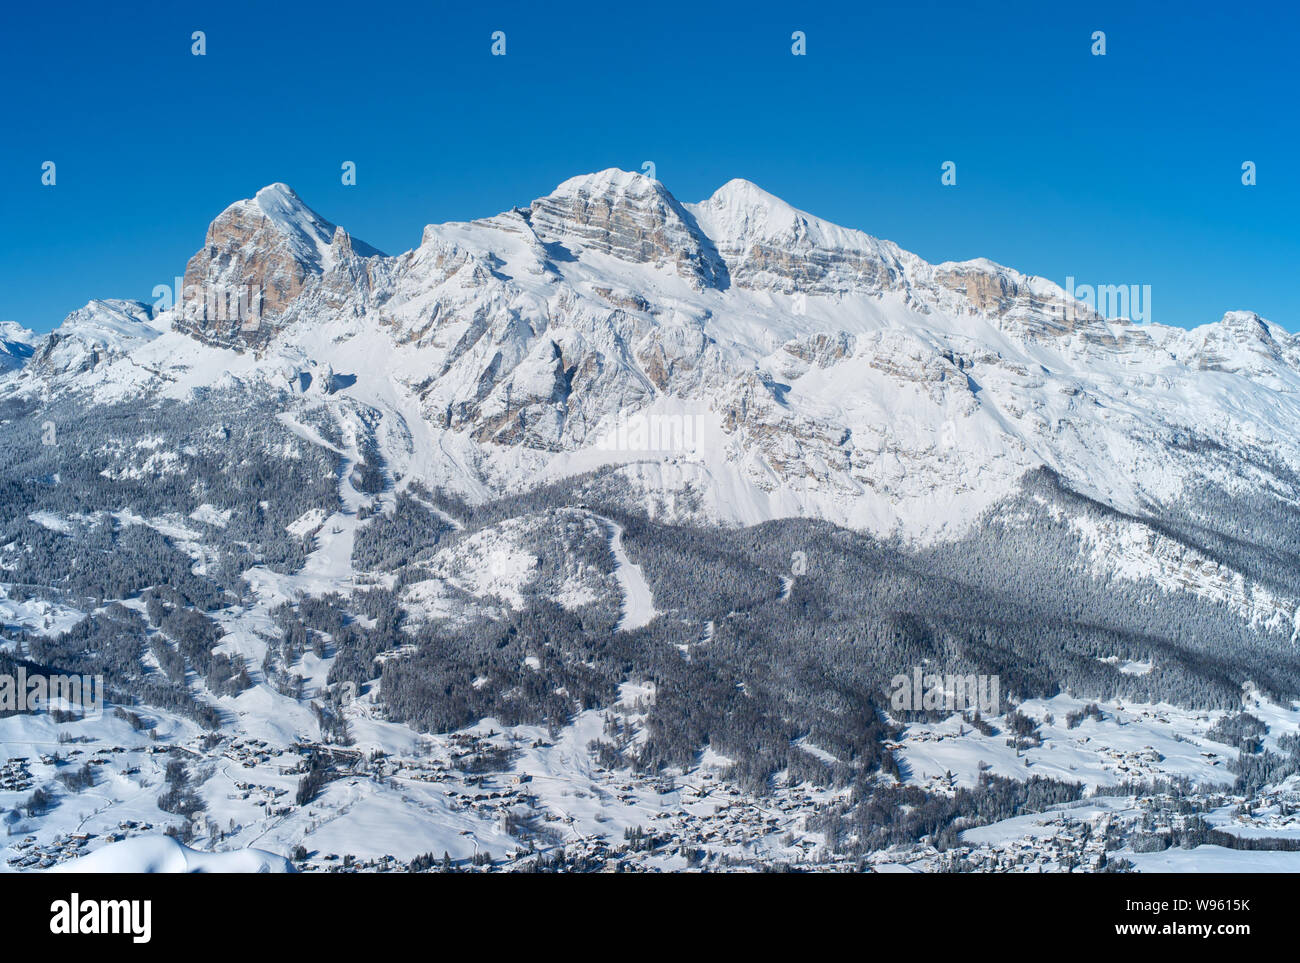 Tofana Peak Mountain Range im Winter mit Schnee bedeckt, die in der italienischen Dolomiten, berühmten Skigebiet Cortina d Ampezzo, Italien Stockfoto